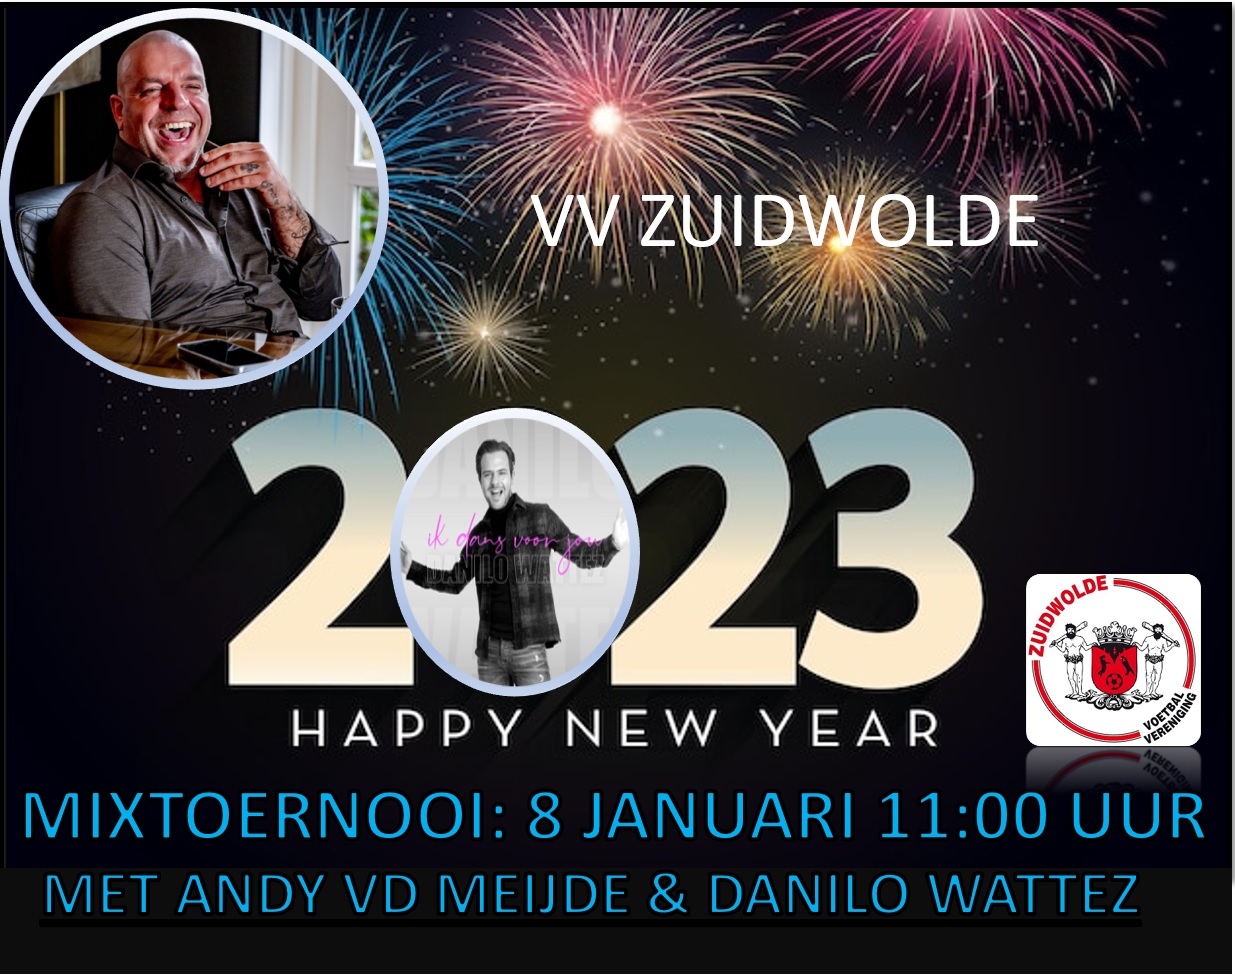 Nieuwjaarstoernooi met Andy vd Meijde en Danilo Wattez